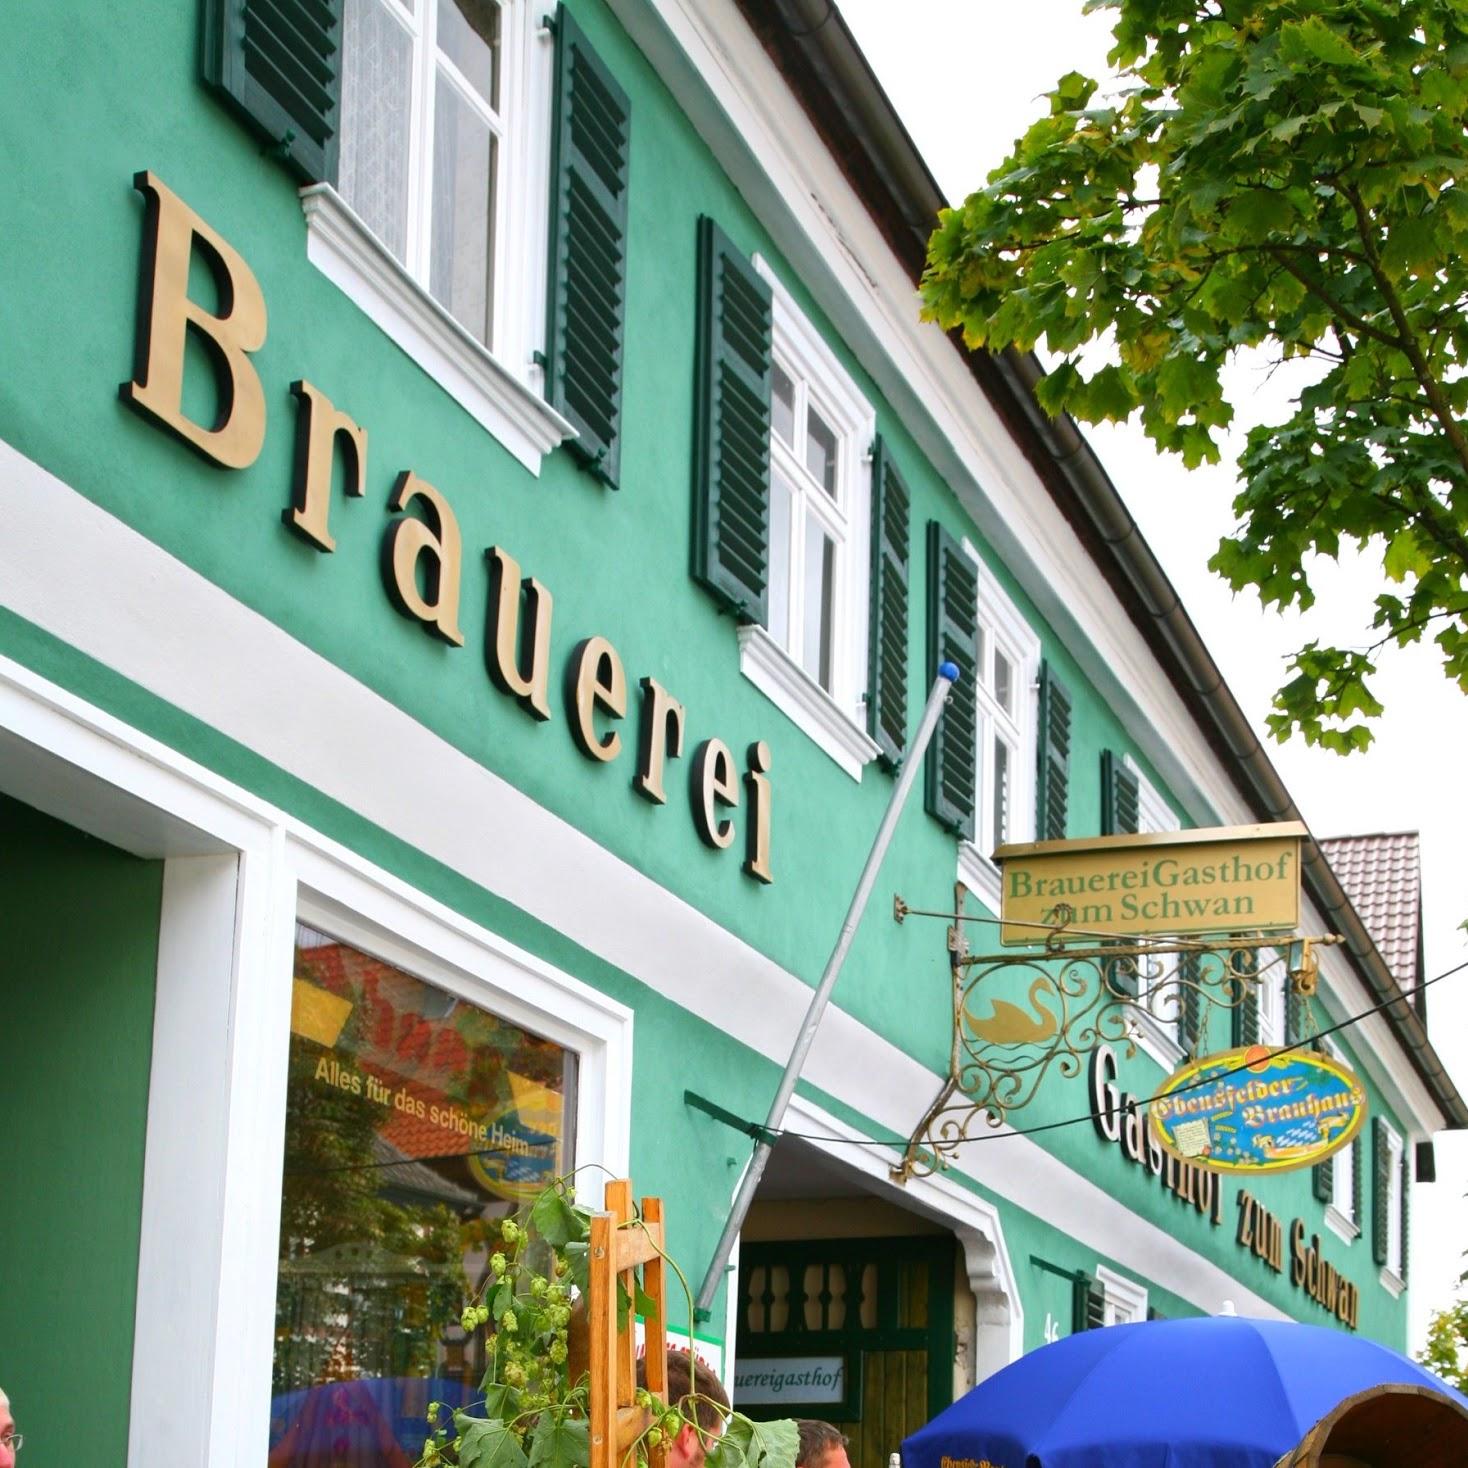 Restaurant "Brauereigasthof Zum Schwan er Brau-und Brotzeitstub